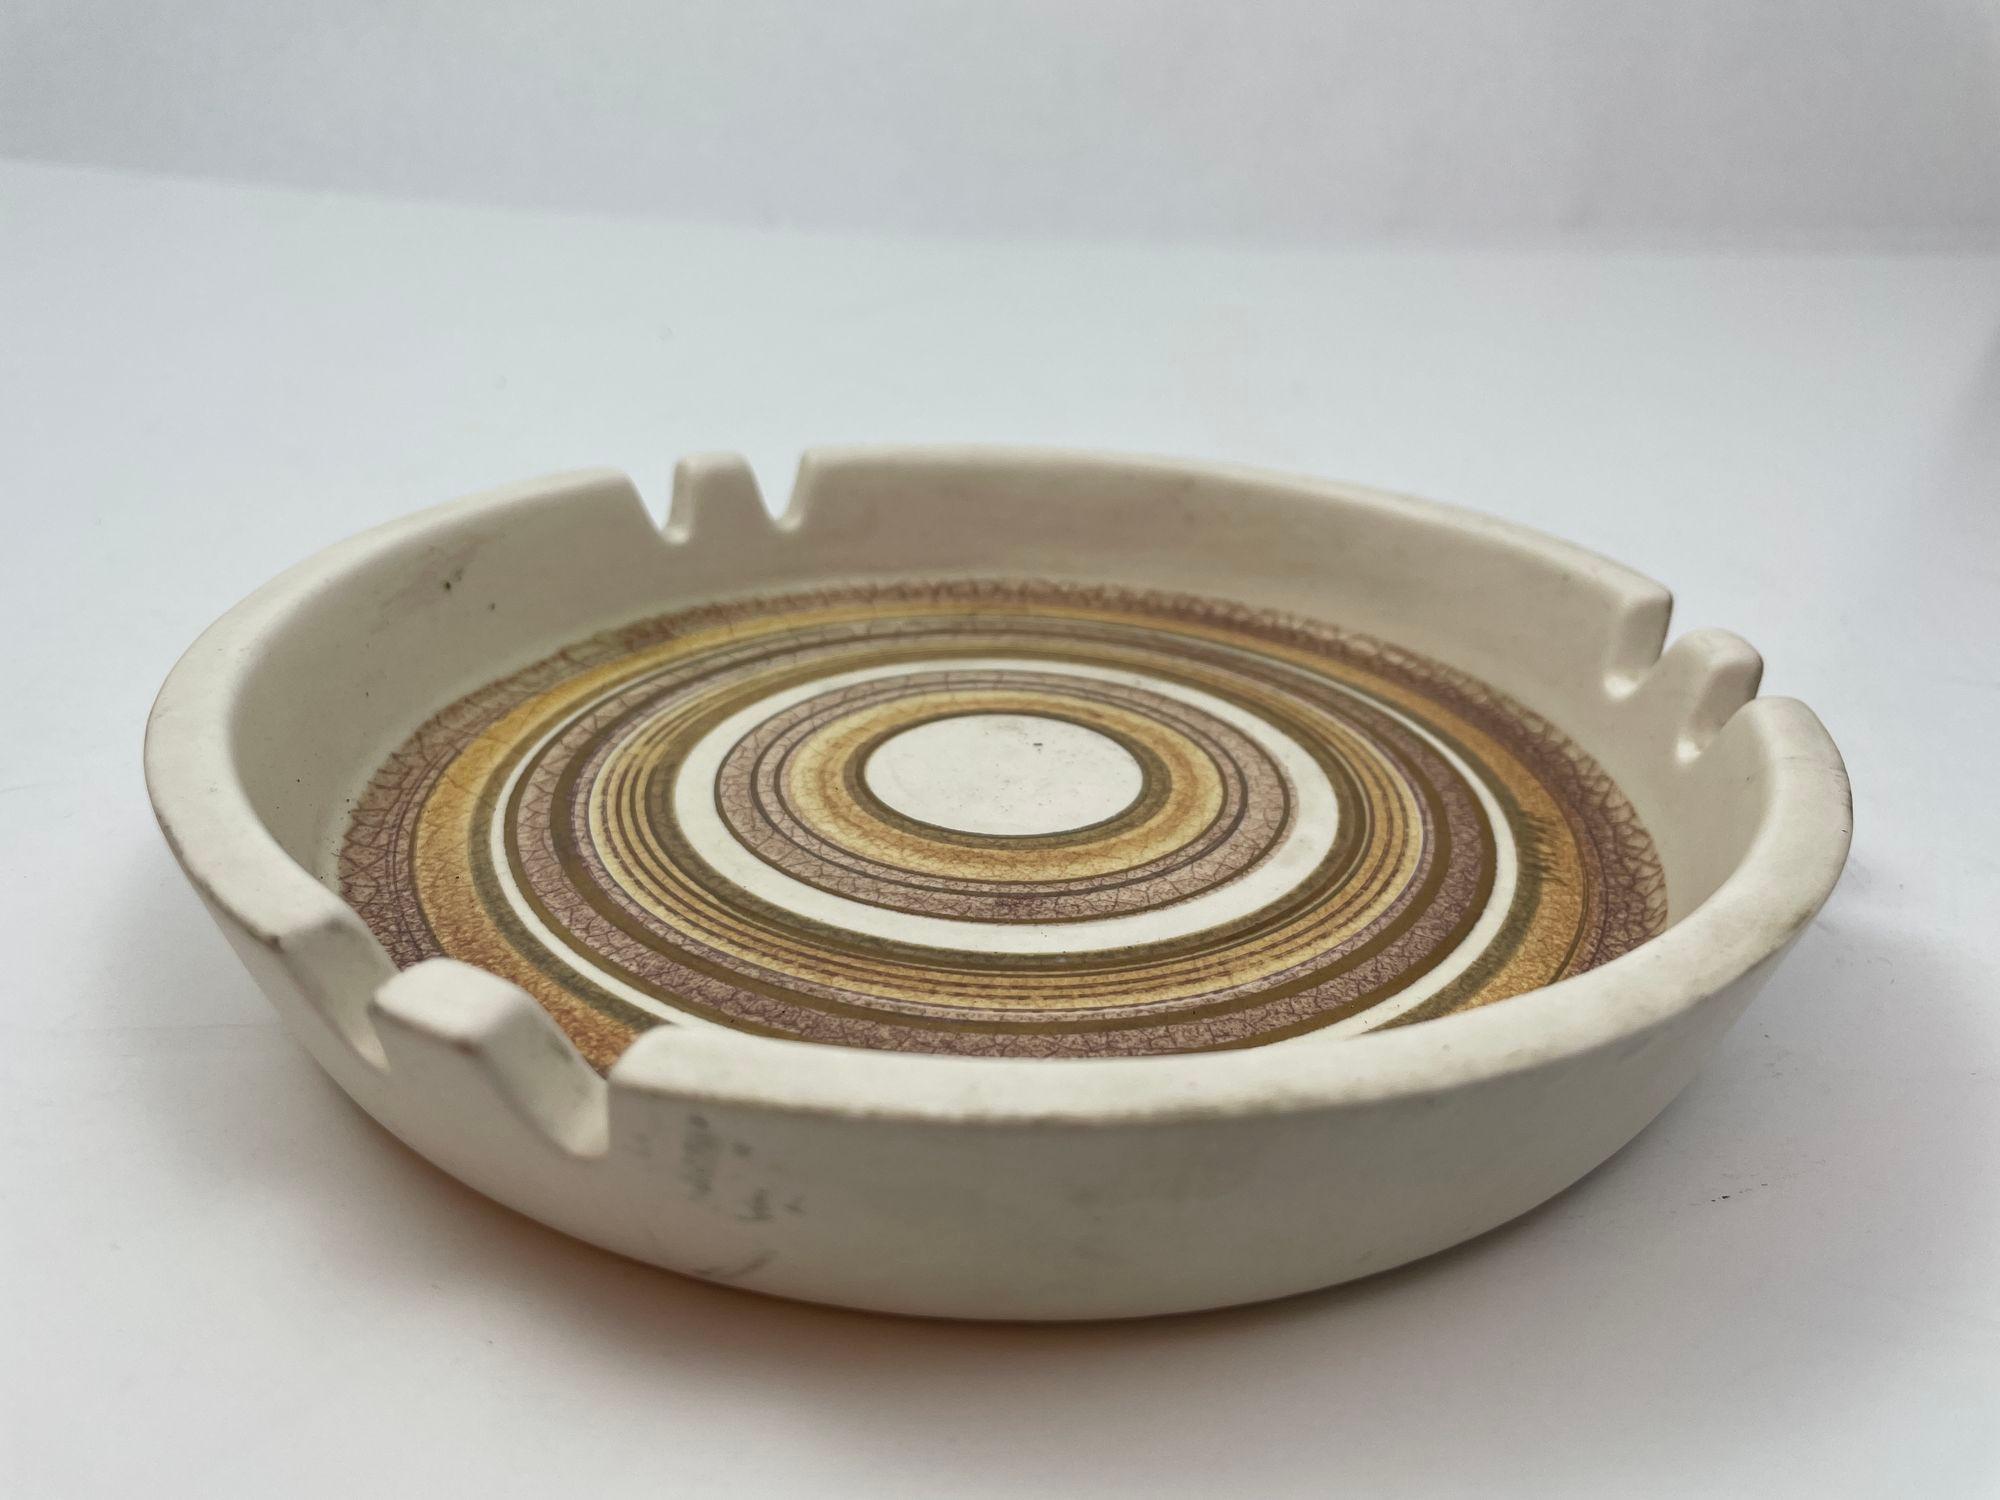 Handgefertigter runder Keramik-Aschenbecher aus der Mitte des Jahrhunderts, signiert von Sascha Brastoff.
Unterschrieben: Sascha Brastoff Kalifornien #056A.
Abmessungen: 1,25